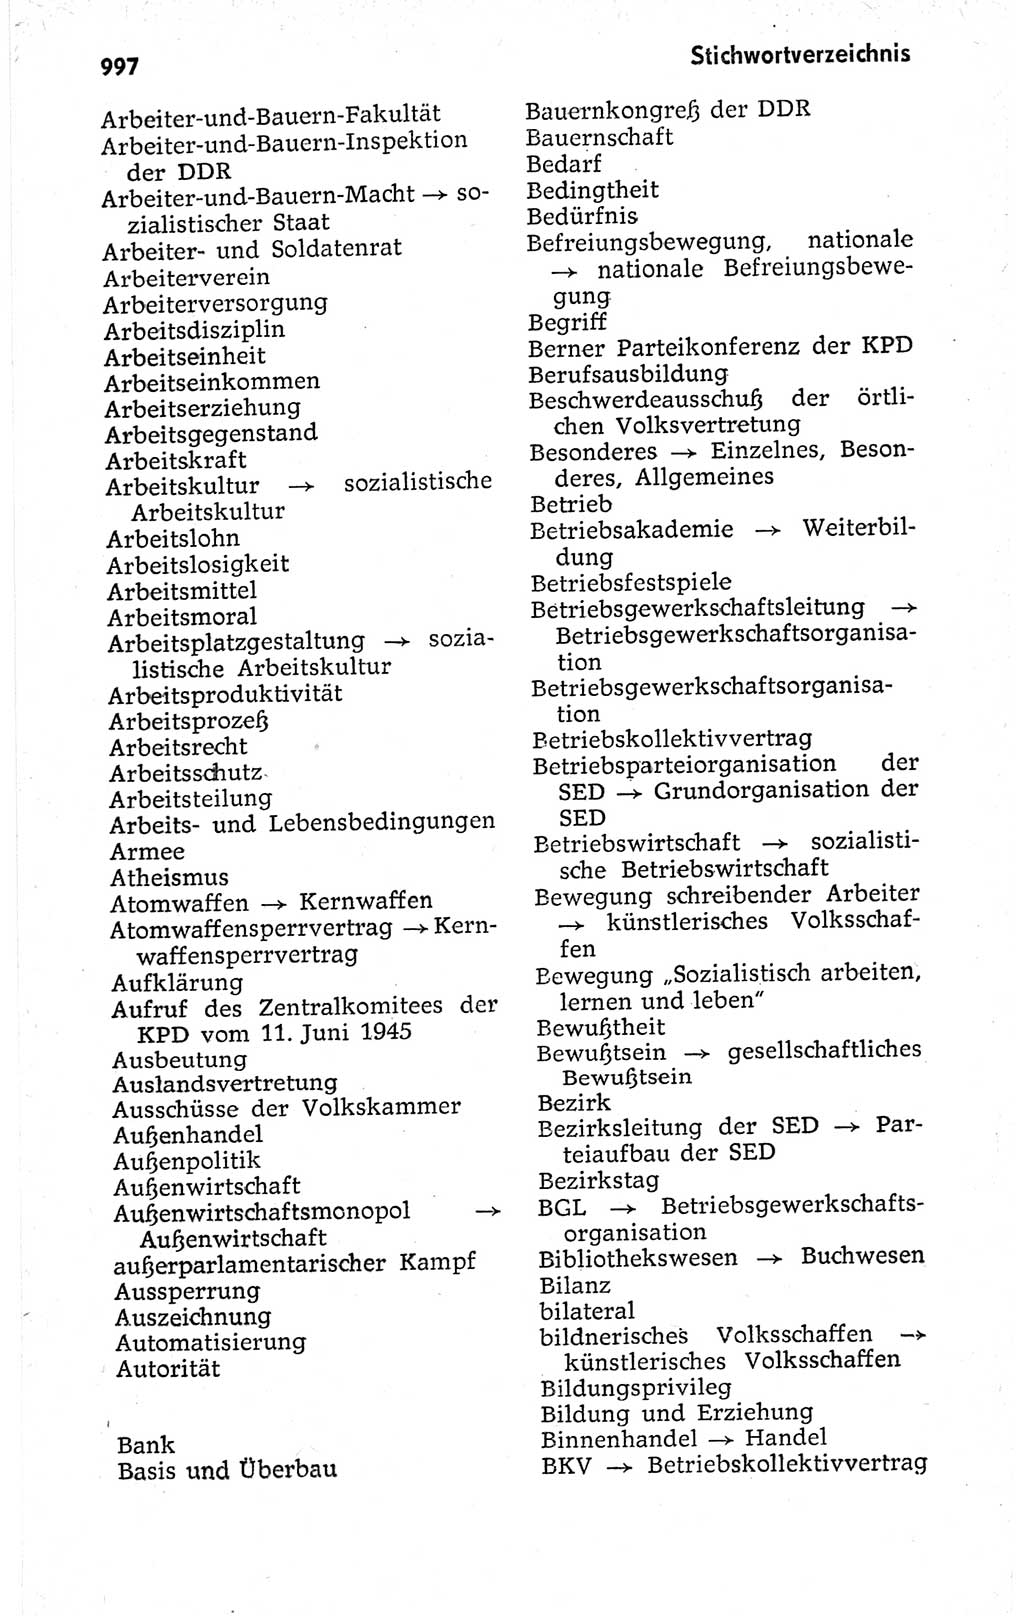 Kleines politisches Wörterbuch [Deutsche Demokratische Republik (DDR)] 1973, Seite 997 (Kl. pol. Wb. DDR 1973, S. 997)